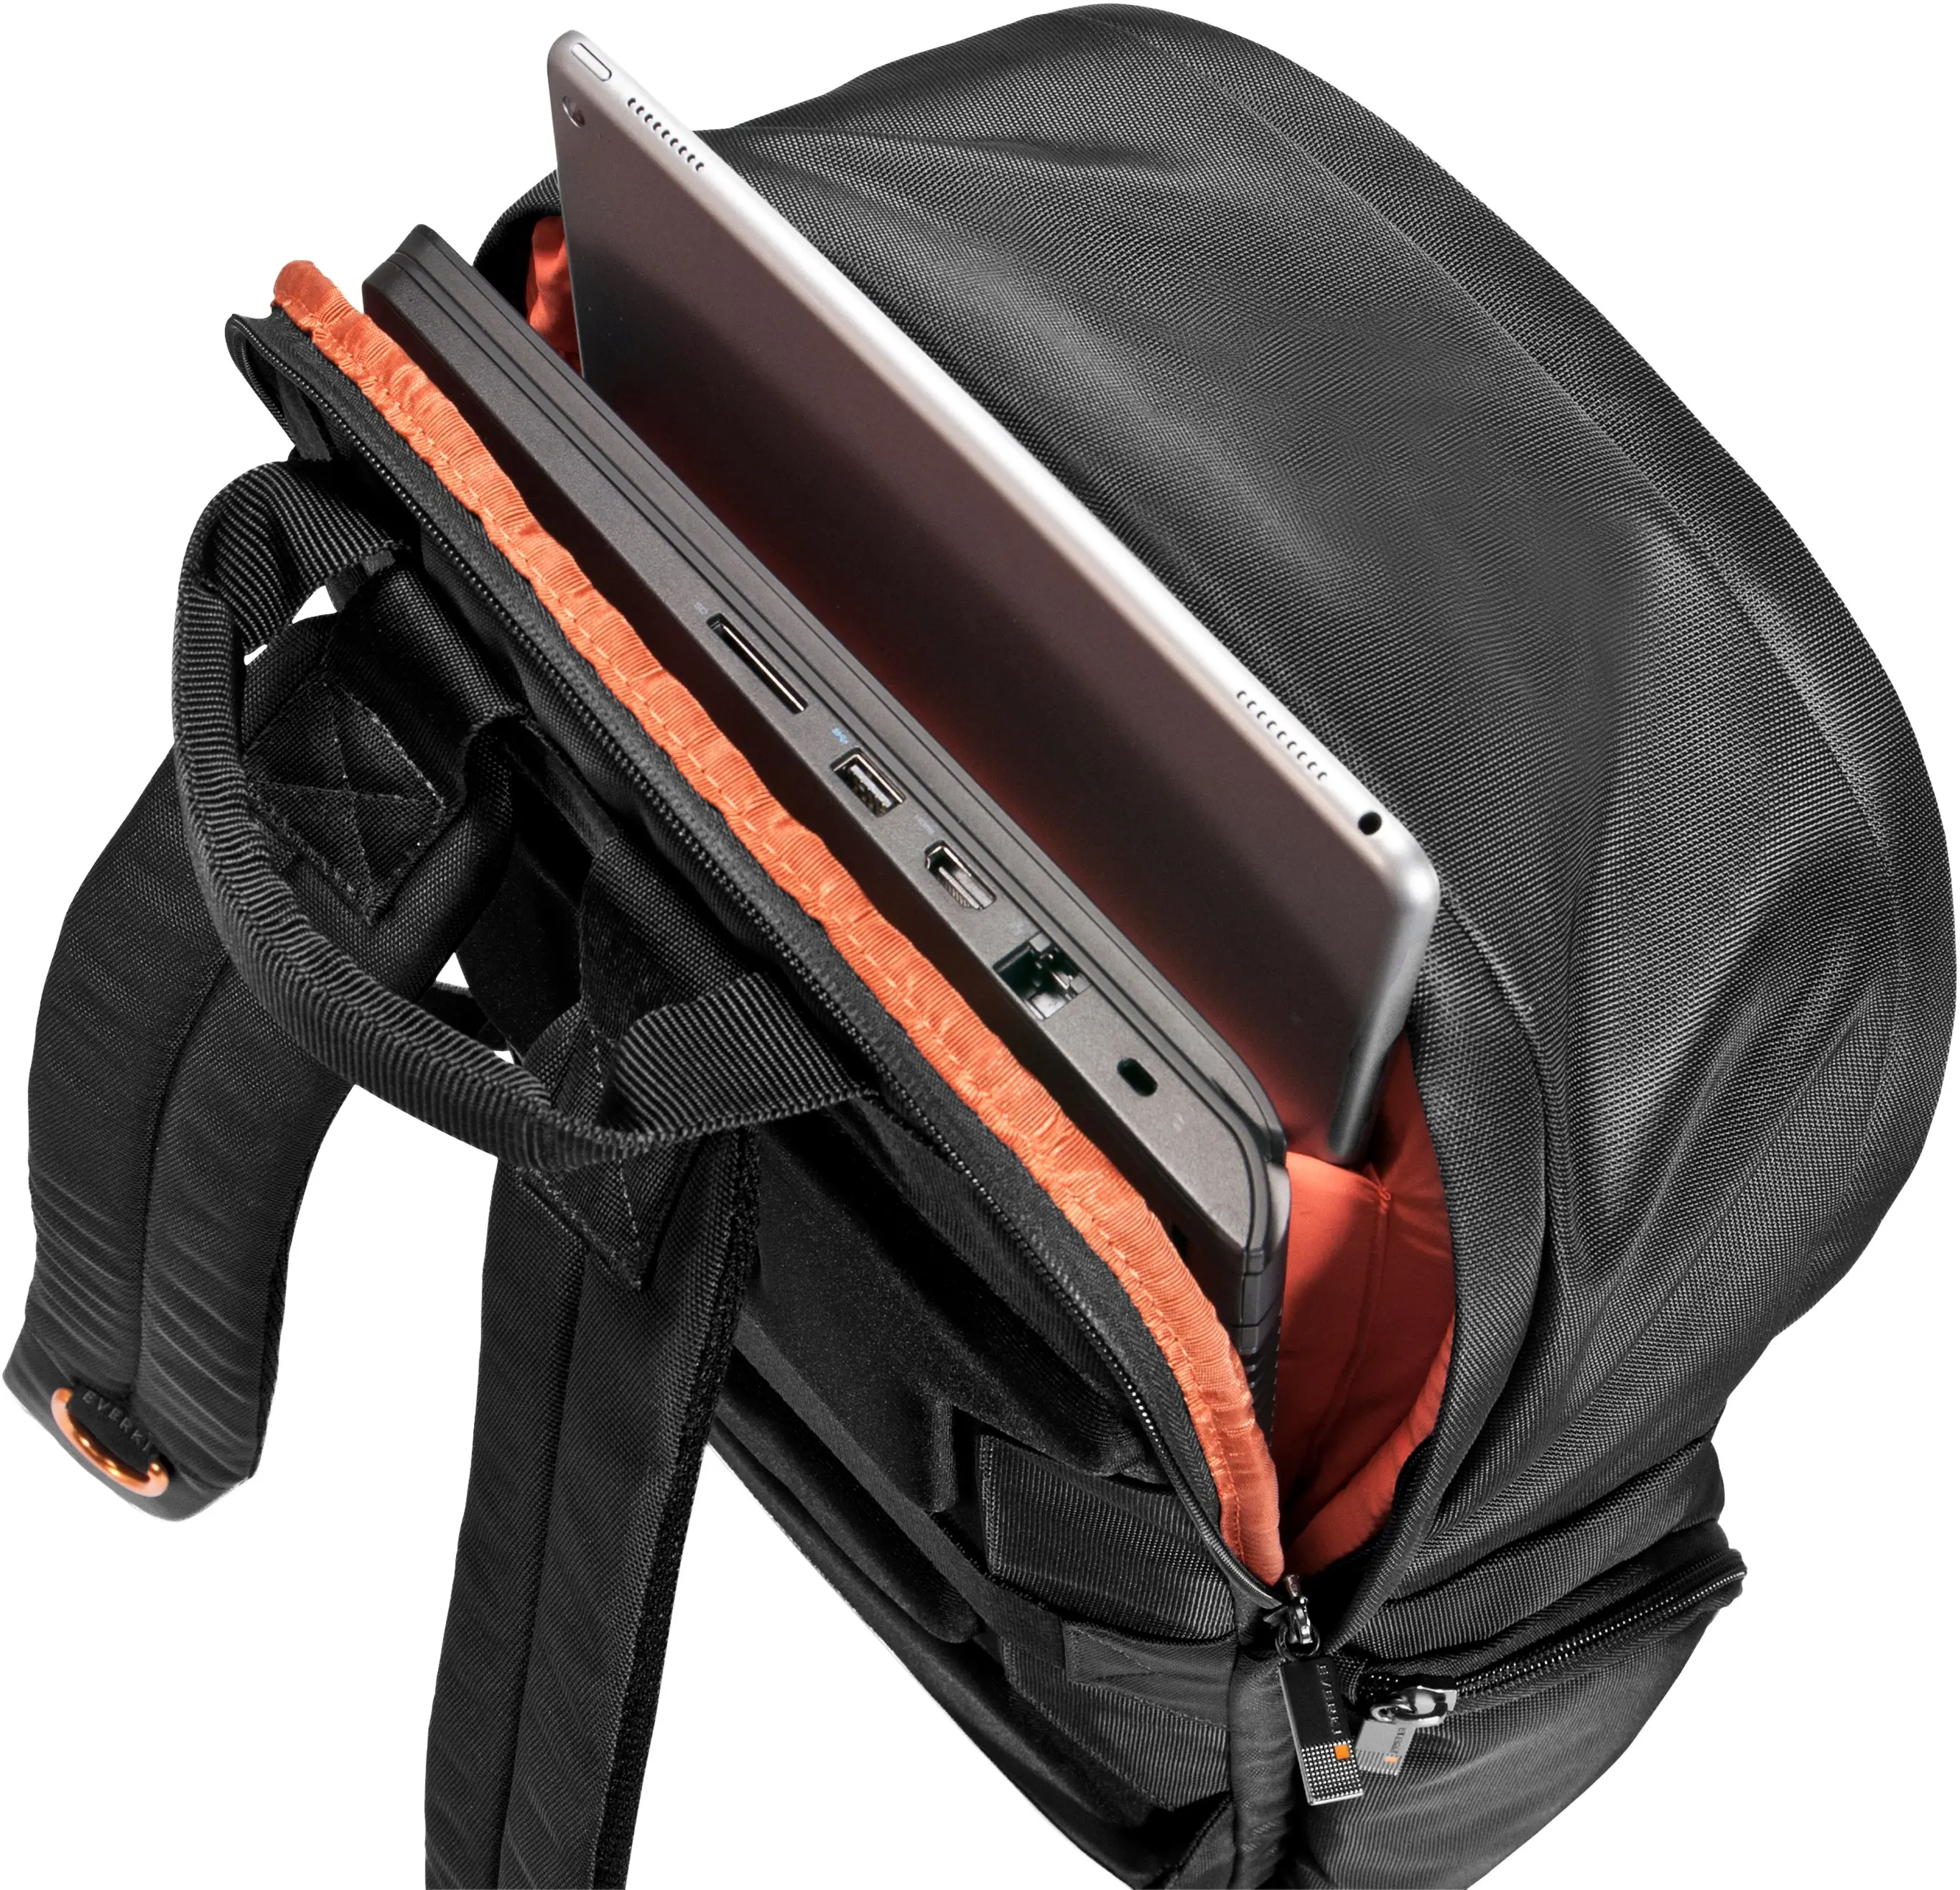 Miejski plecak na laptop EVERKI ContemPRO Commuter 15,6" czarny